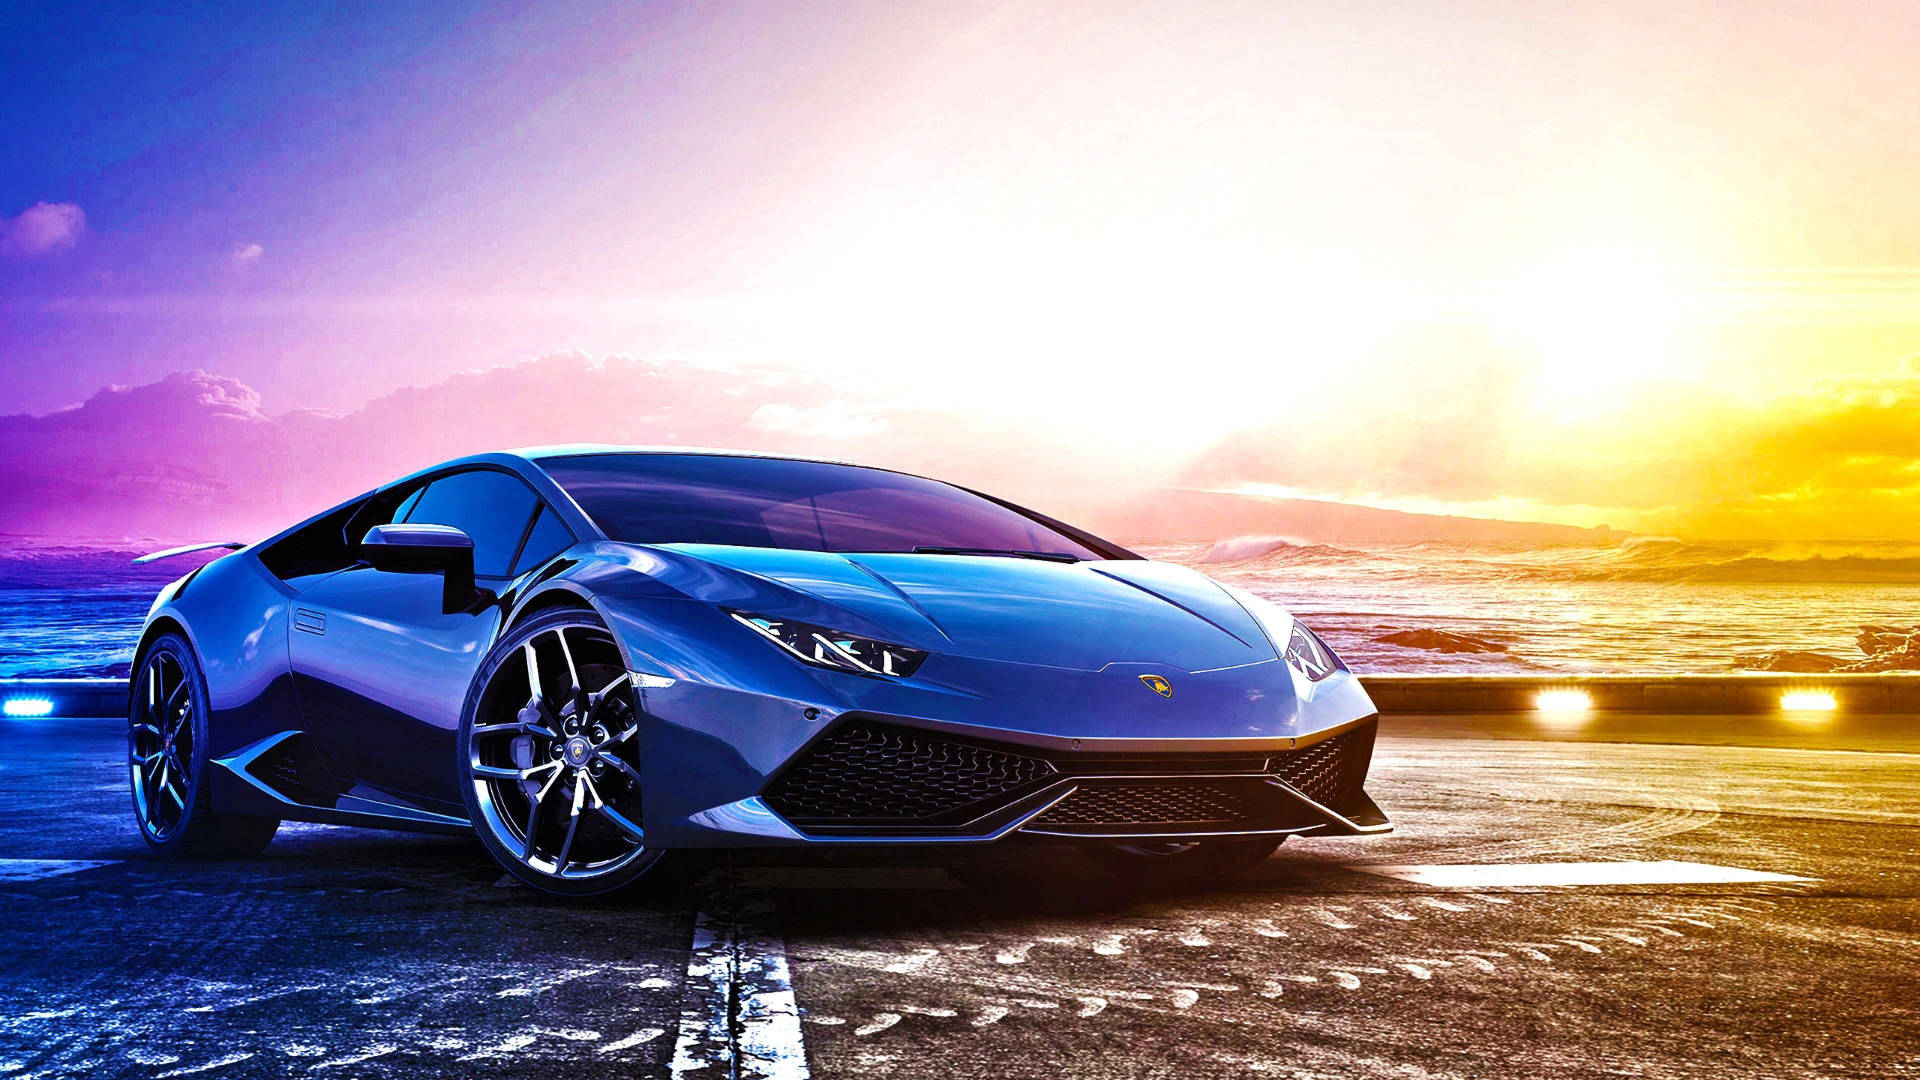 Cool Cars: Dreamy Lamborghini Wallpaper